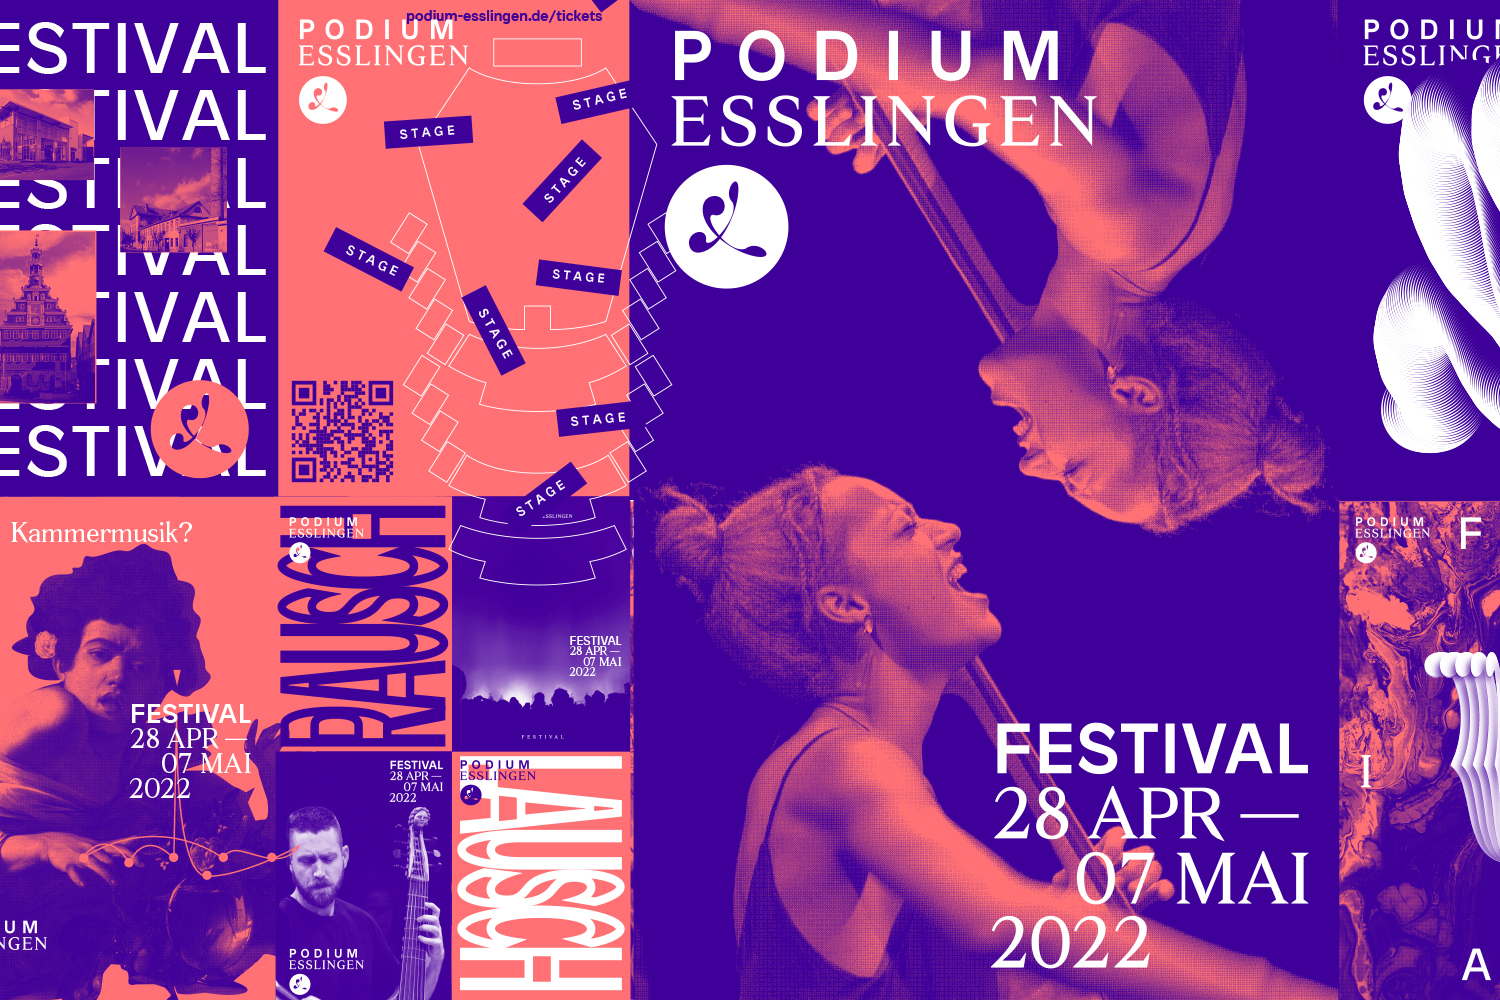 Bild - PODIUM Festival 2022